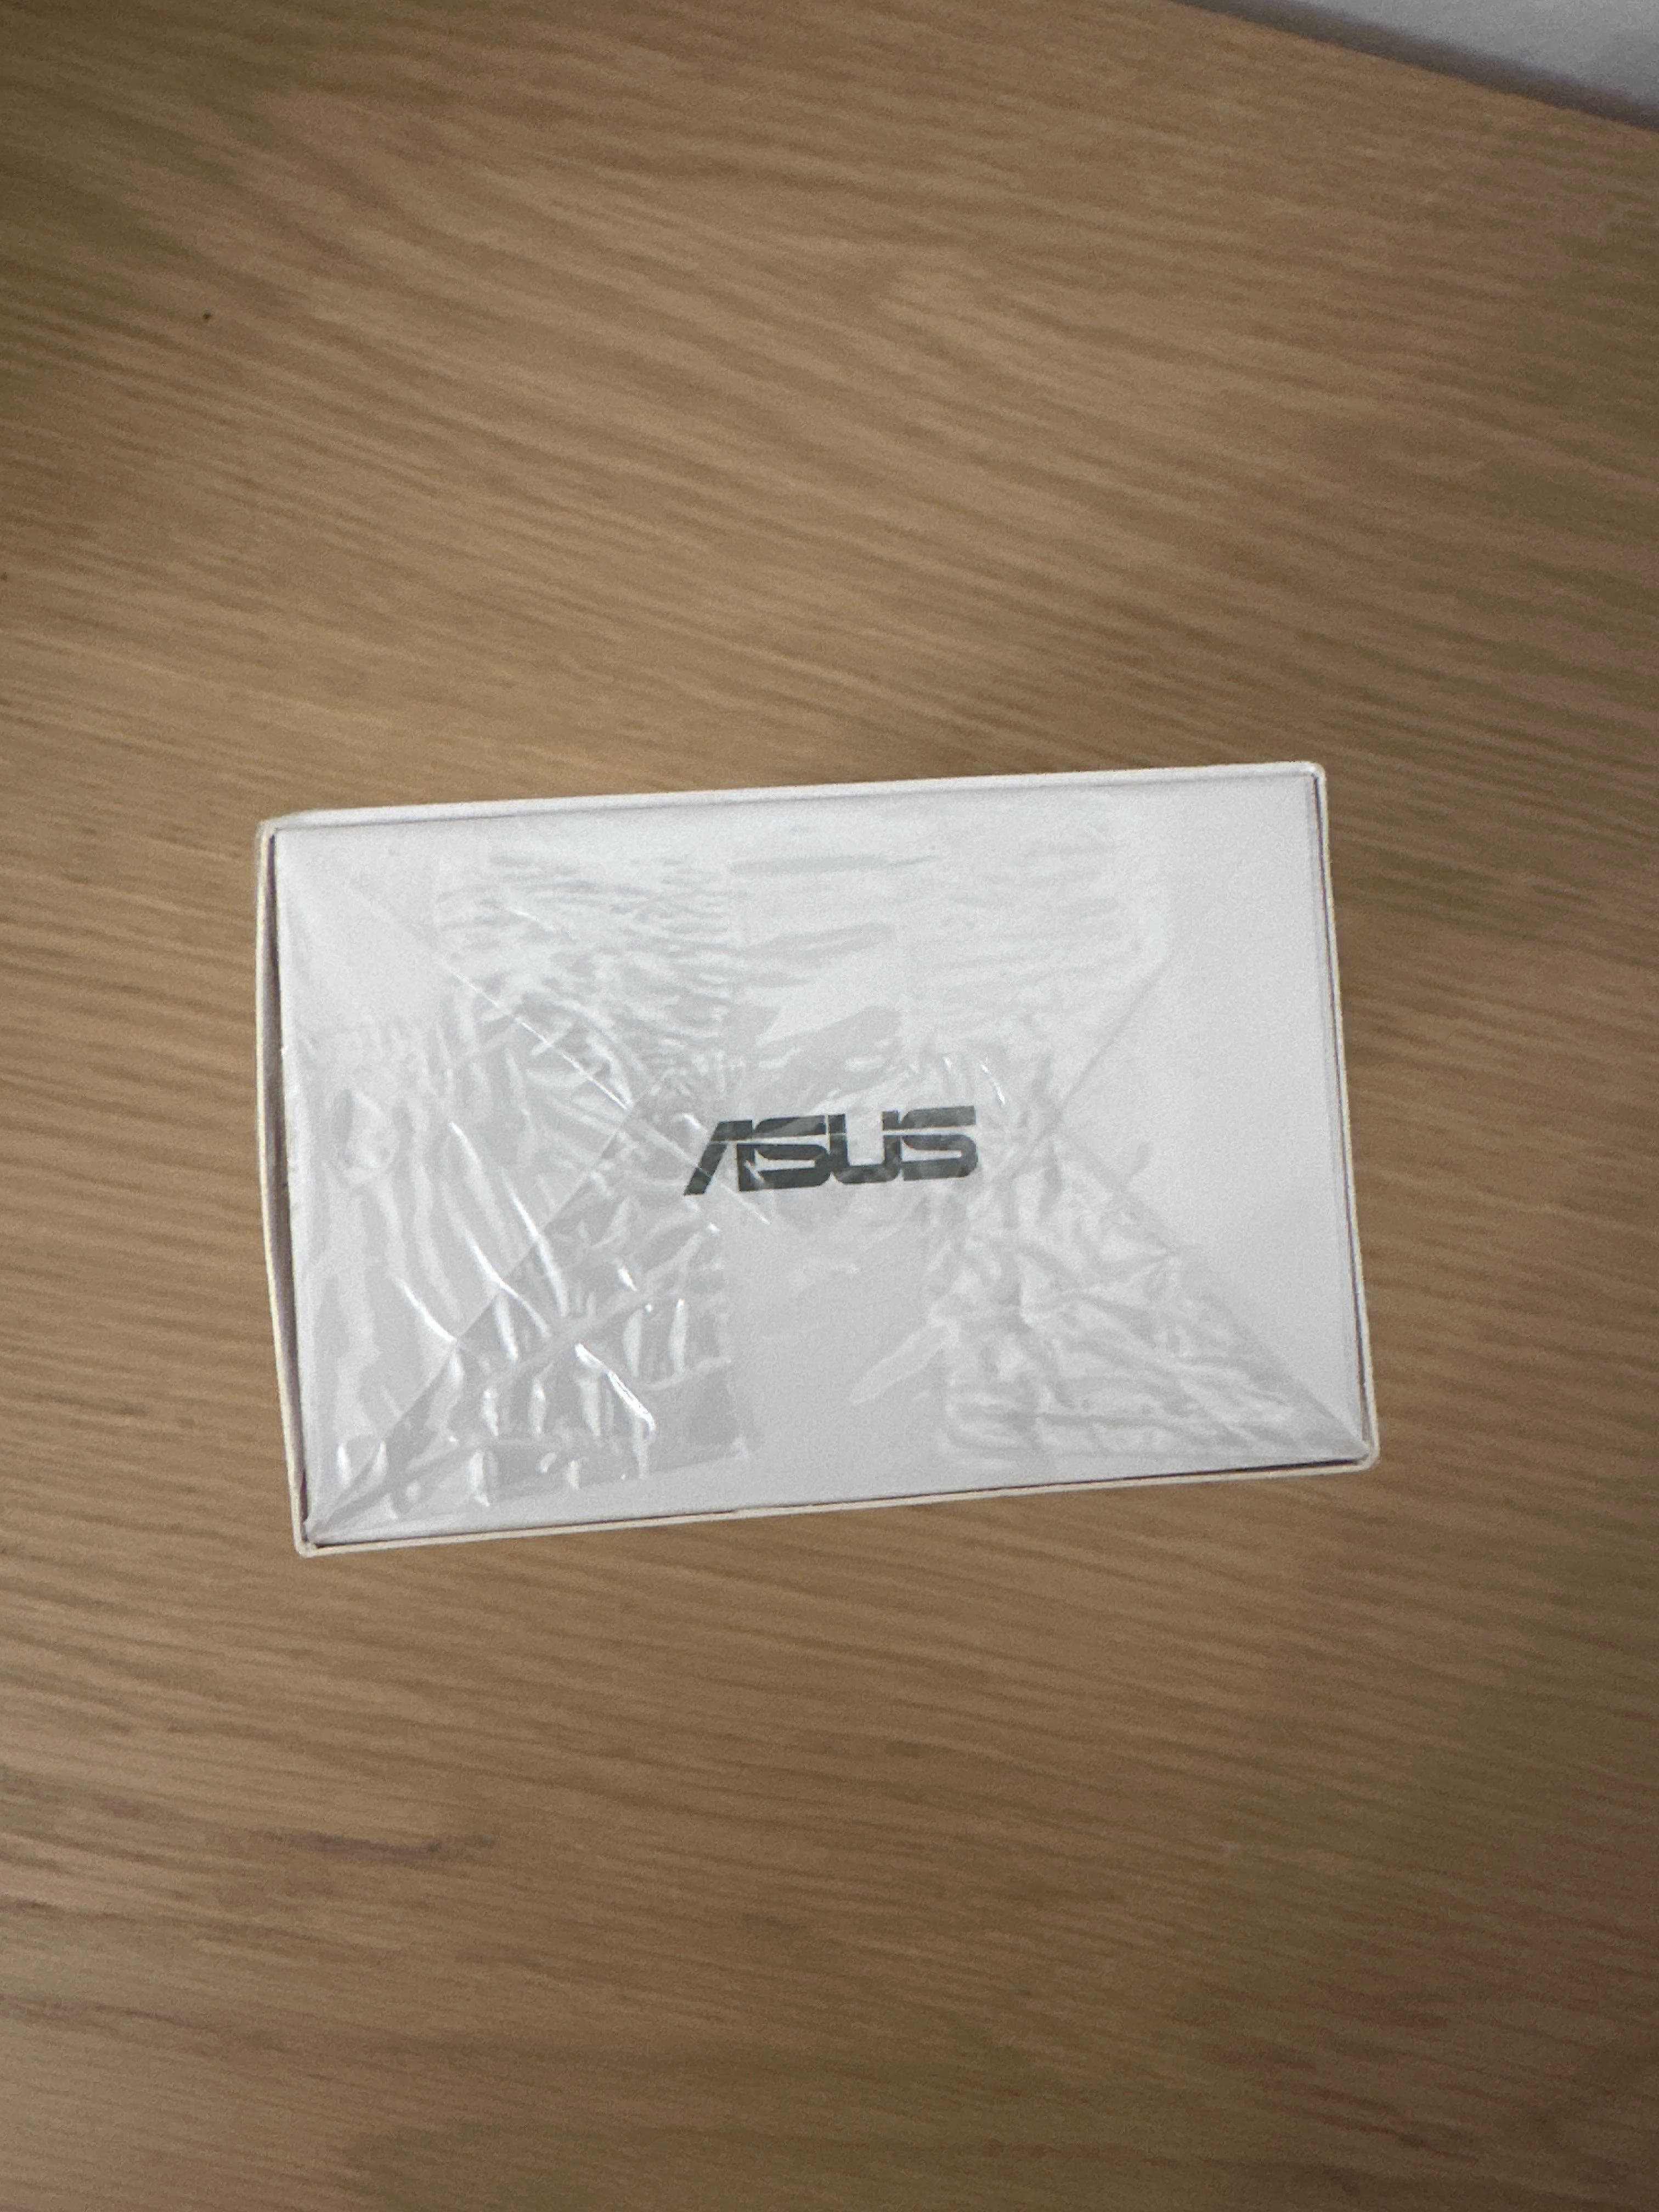 Asus Zenfone 3 Max nowy, fabrycznie zapakowany